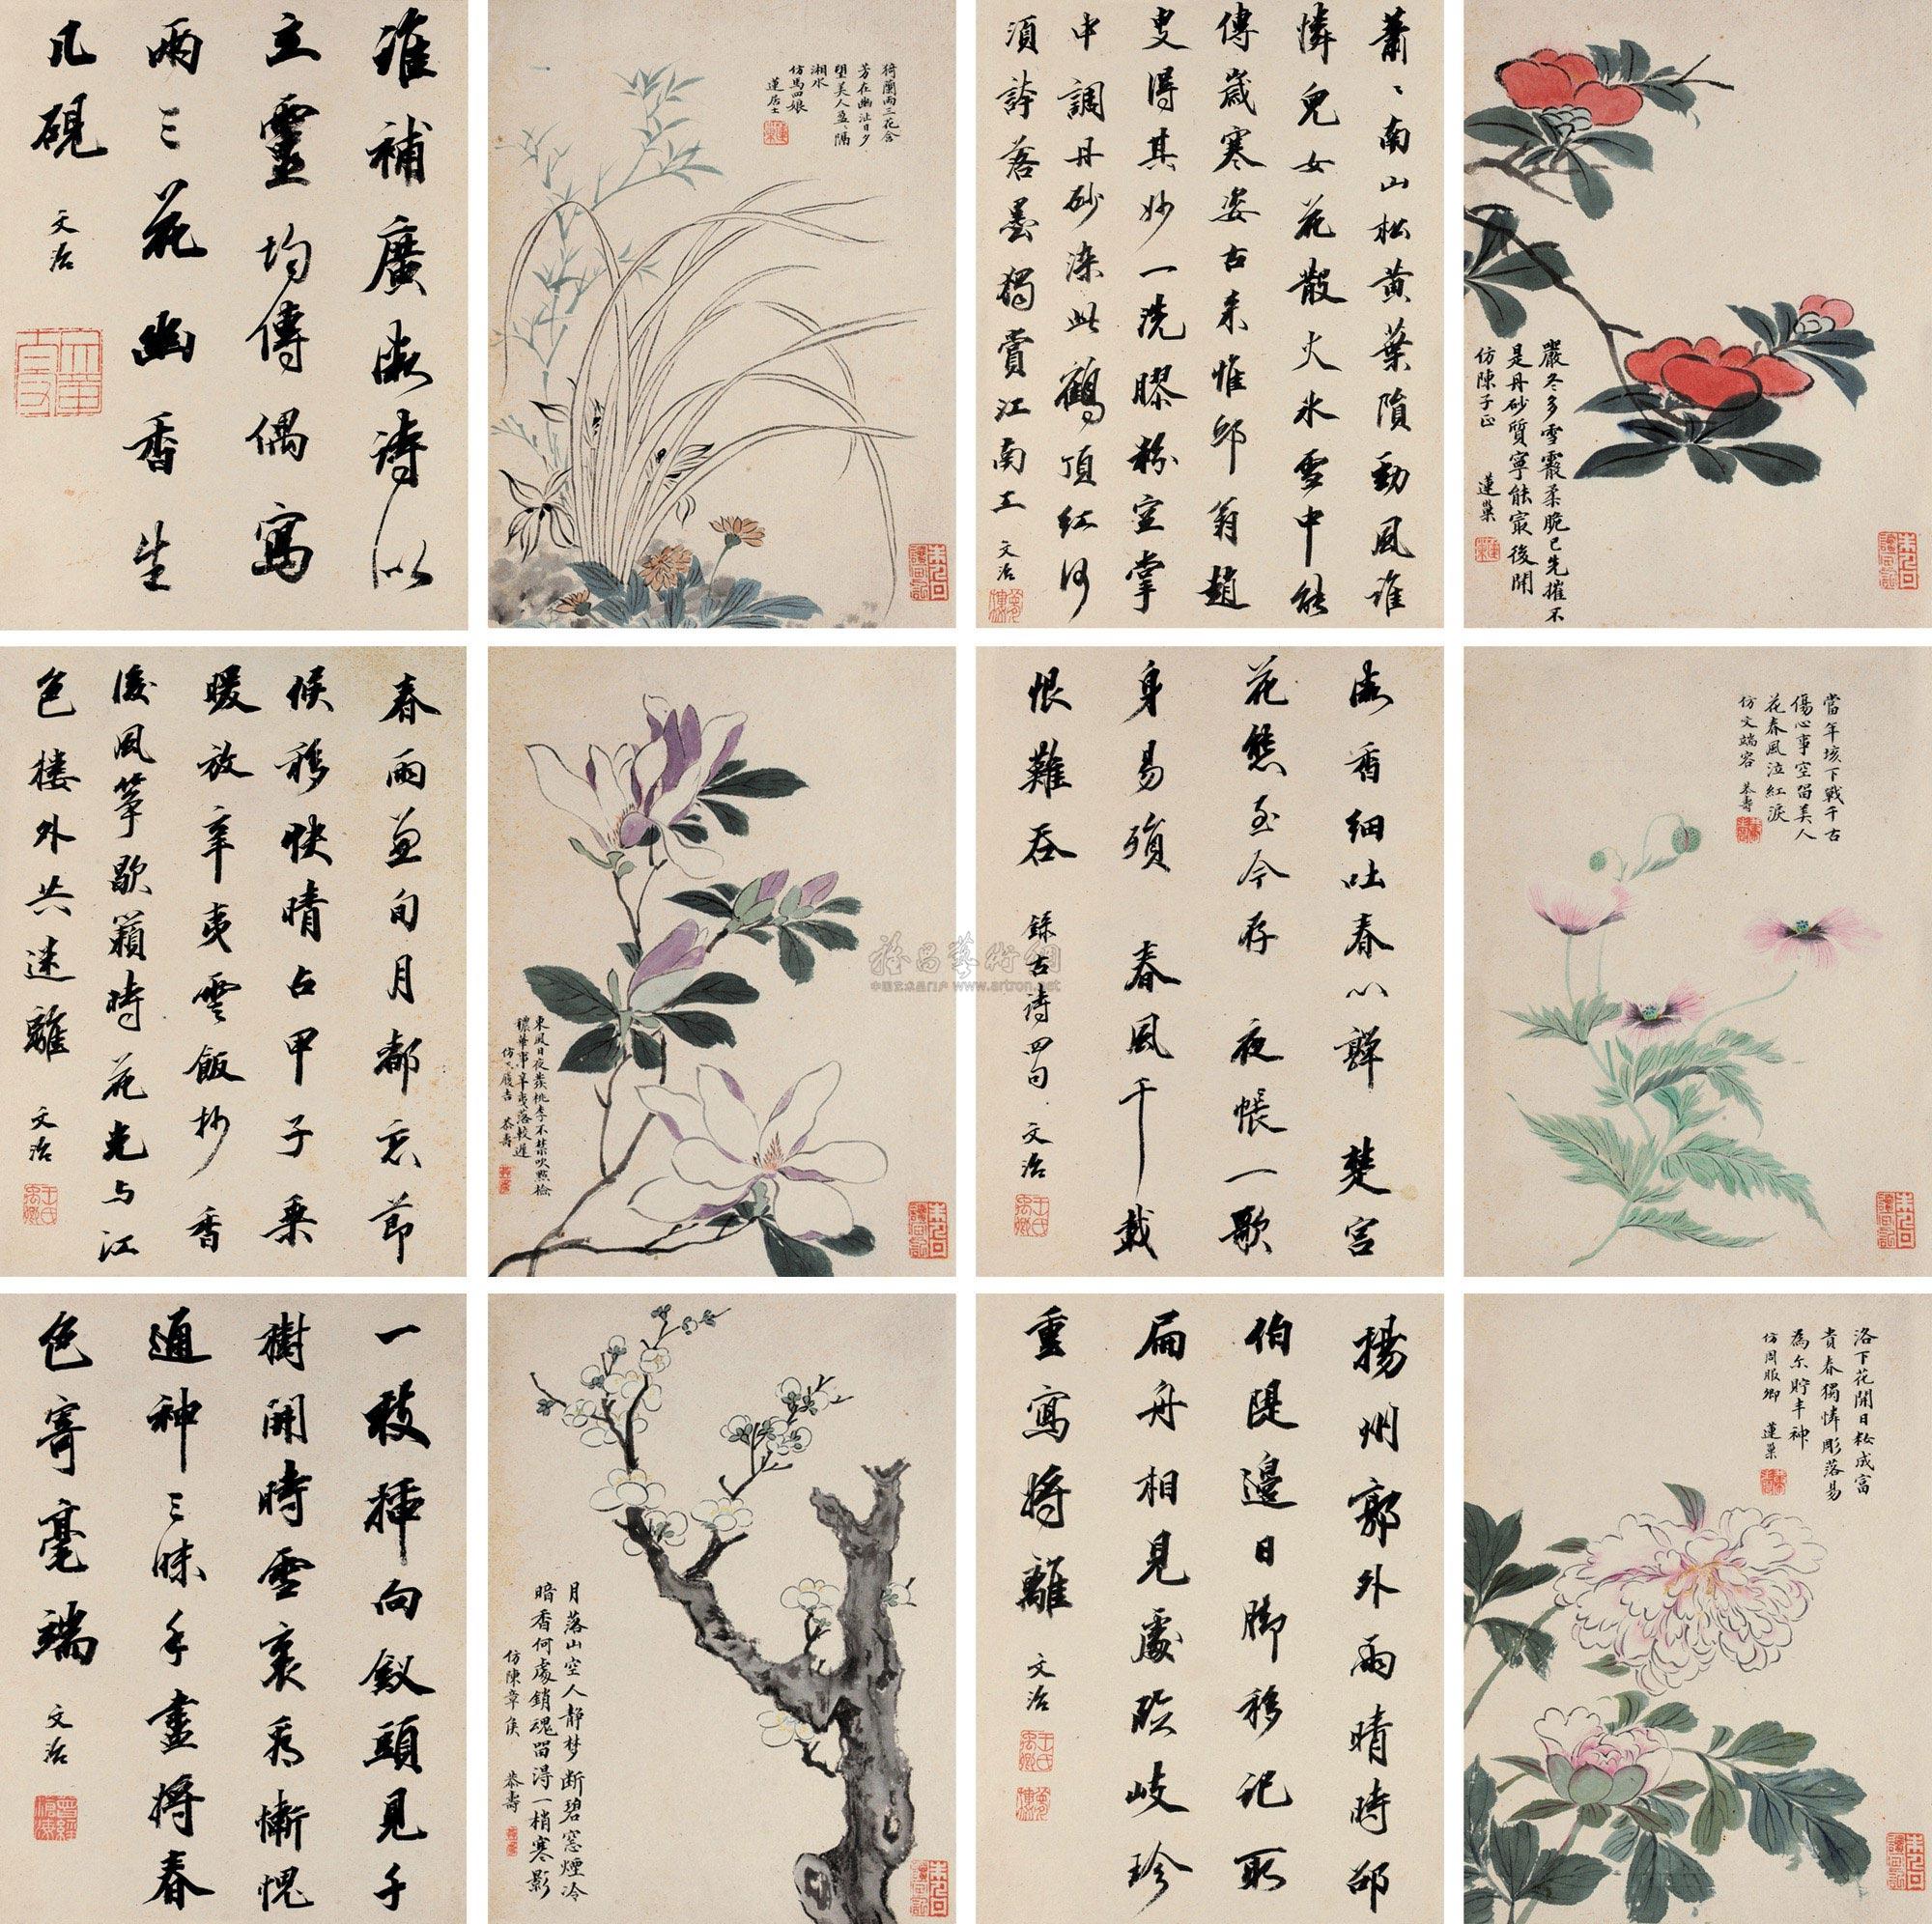 拍卖首页 北京保利国际拍卖有限公司 2011年秋季拍卖会 中国古代书画